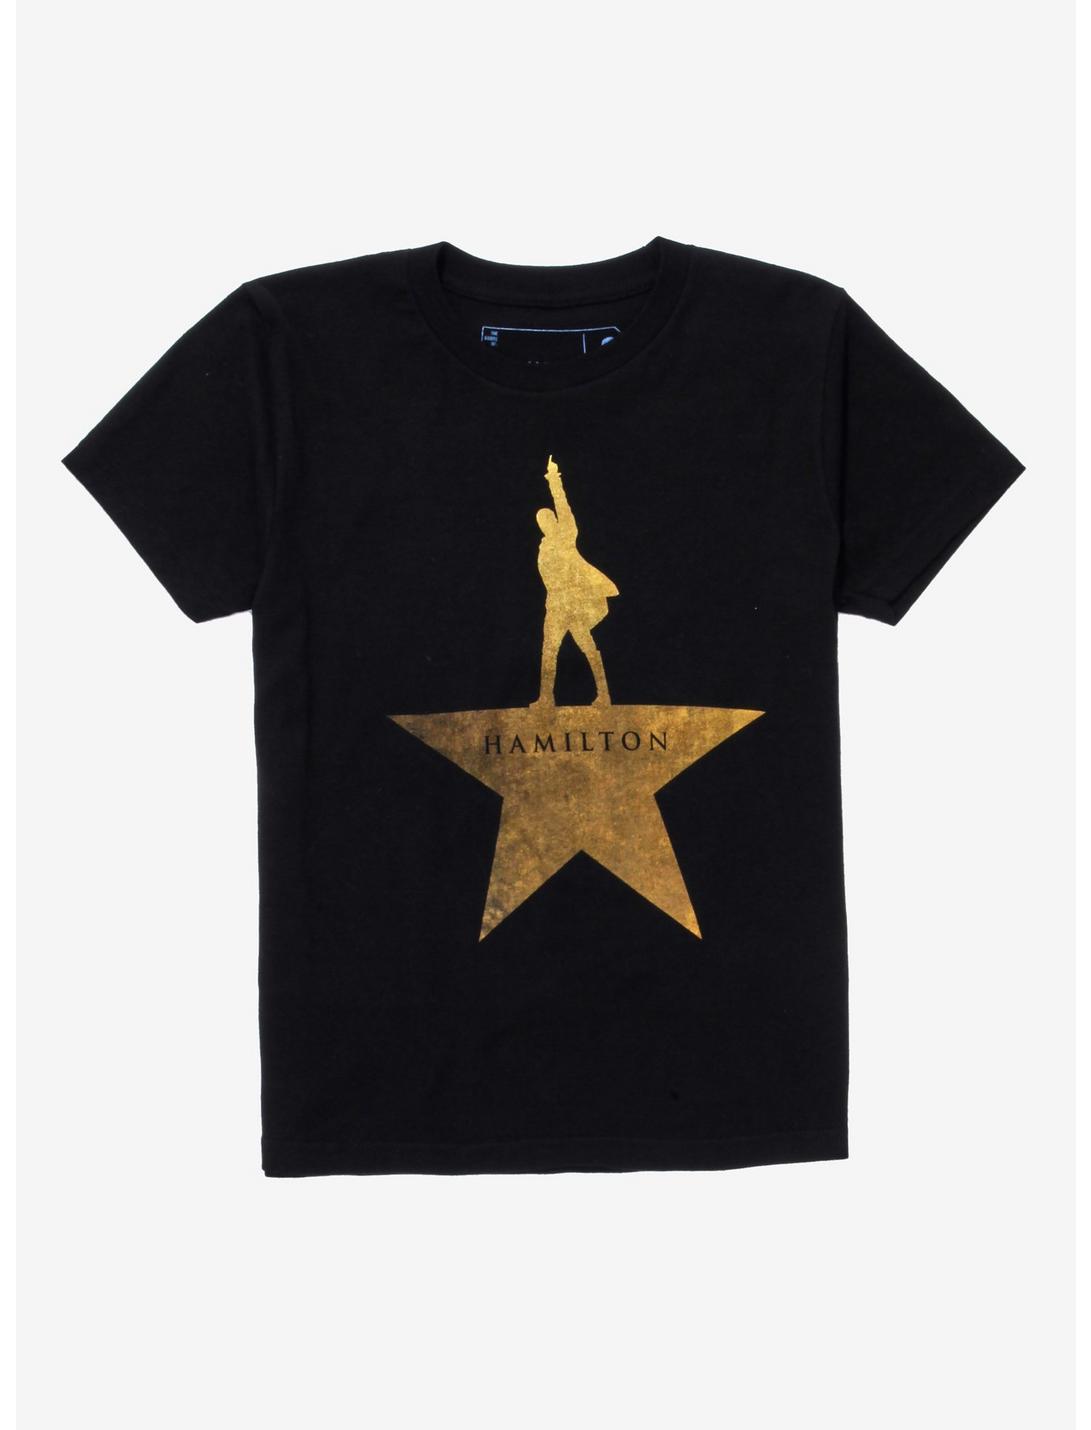 Hamilton Gold Star Logo Youth T-Shirt, GOLD, hi-res